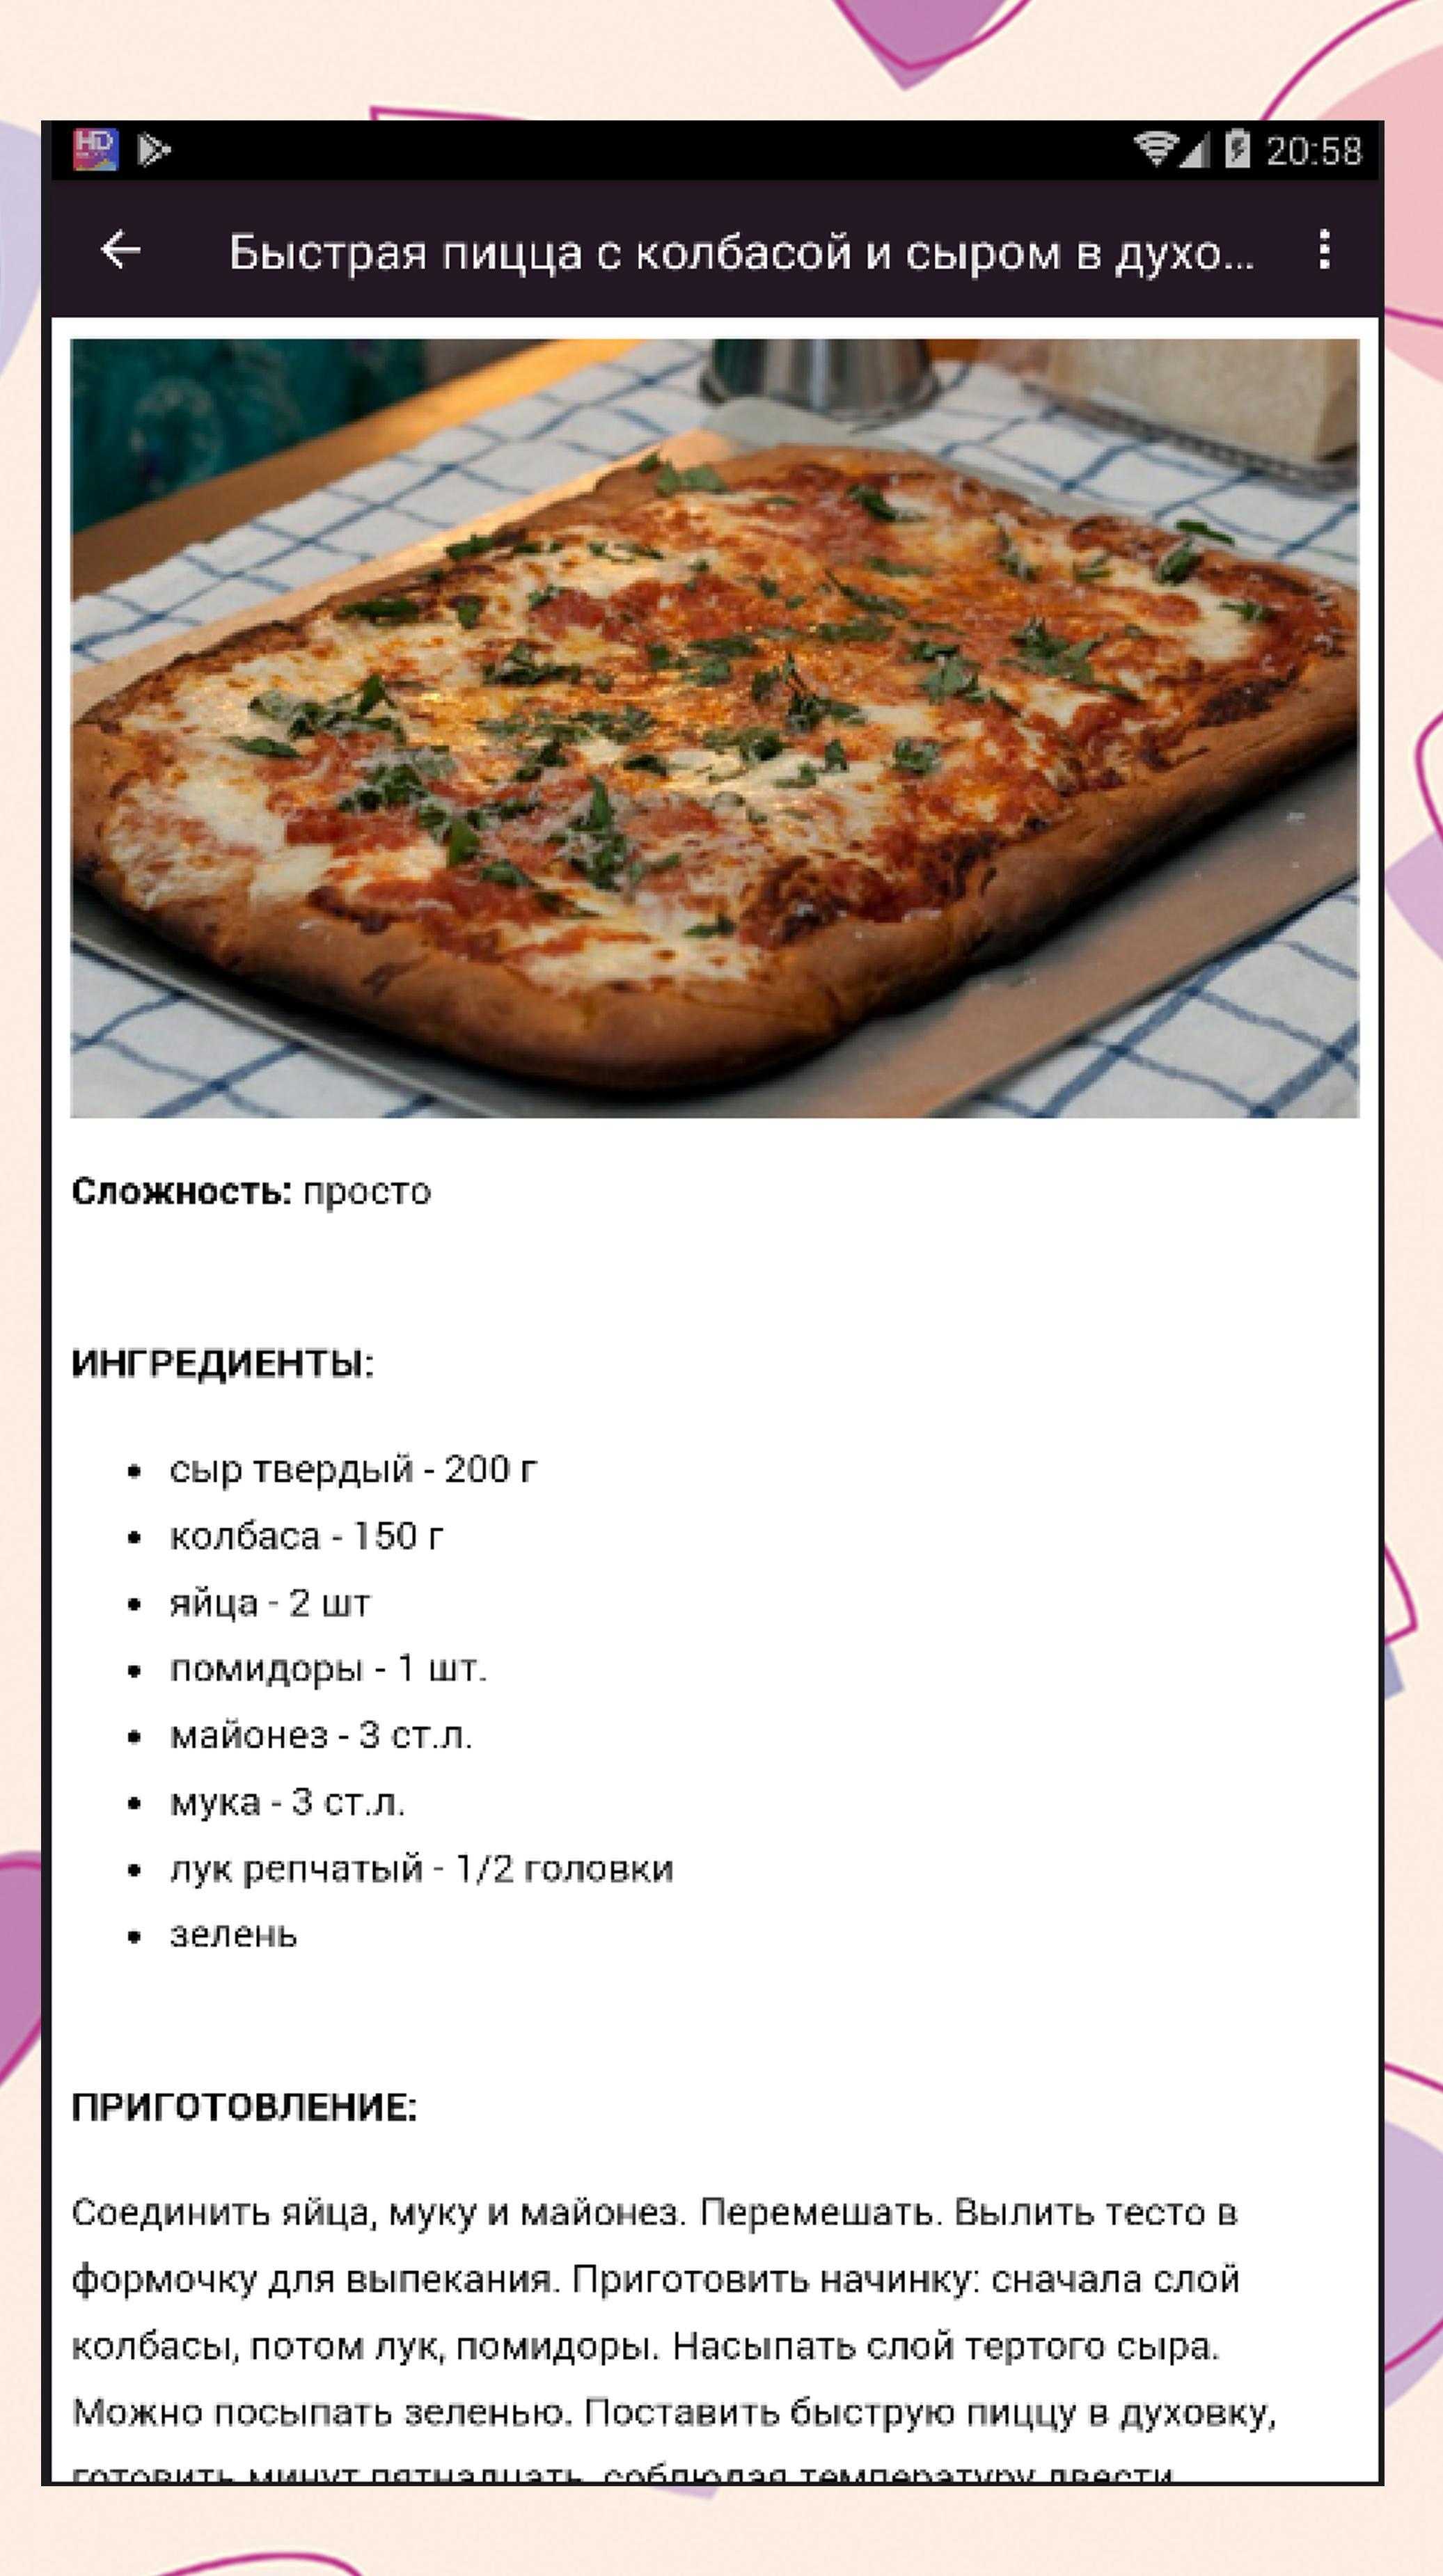 тесто для пиццы дрожжевое на сухих дрожжах быстрого приготовления как в пиццерии молоке фото 65